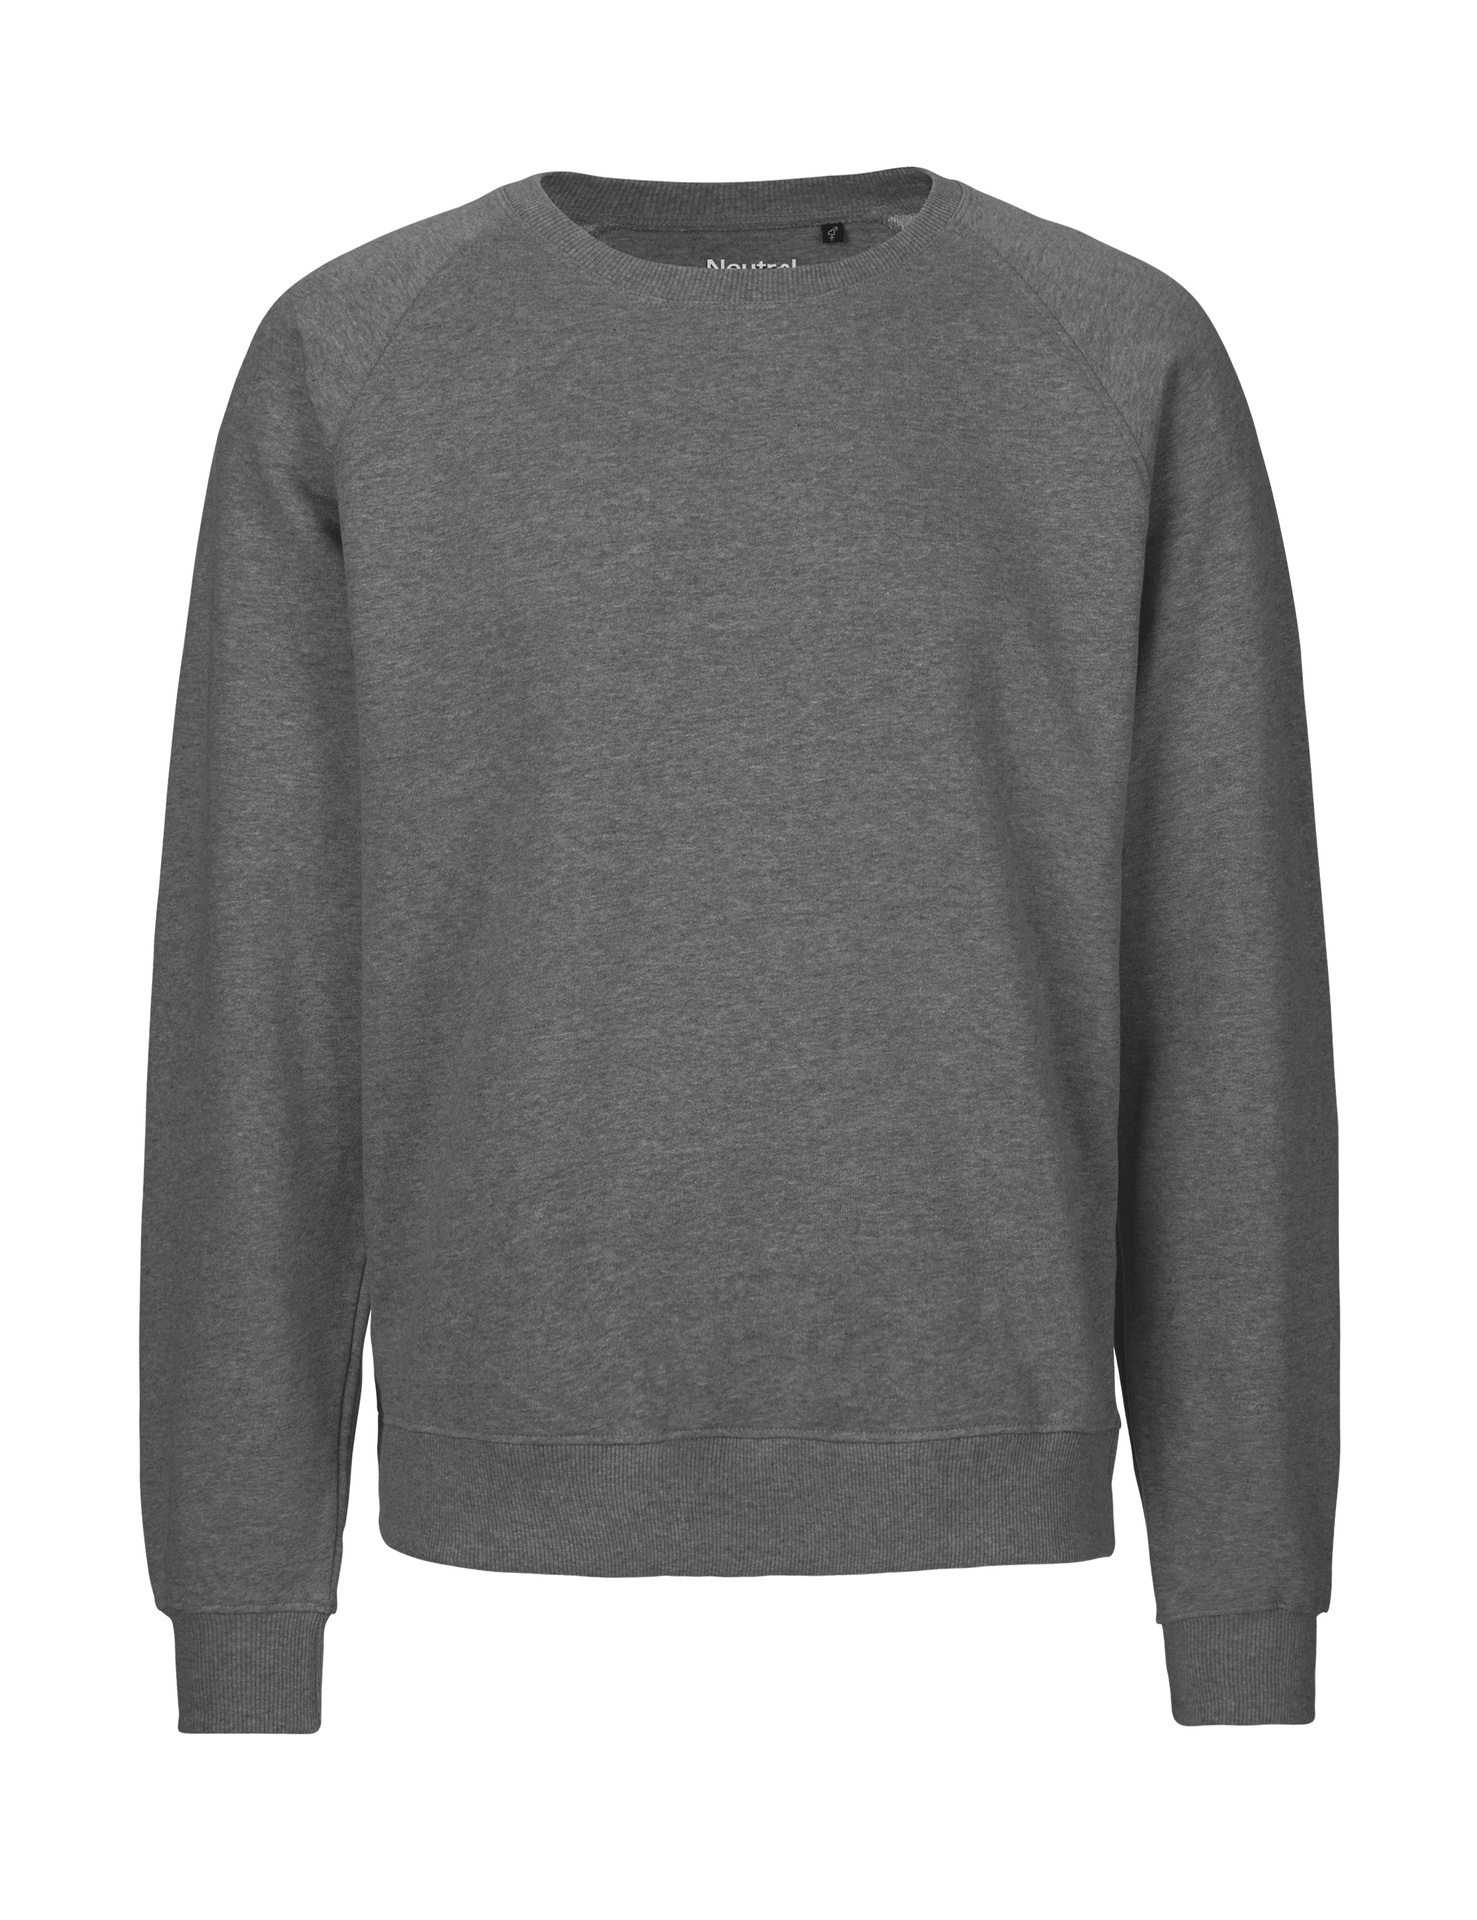 [PR/02702] Unisex Sweatshirt (Dark Heather 08, 2XL)